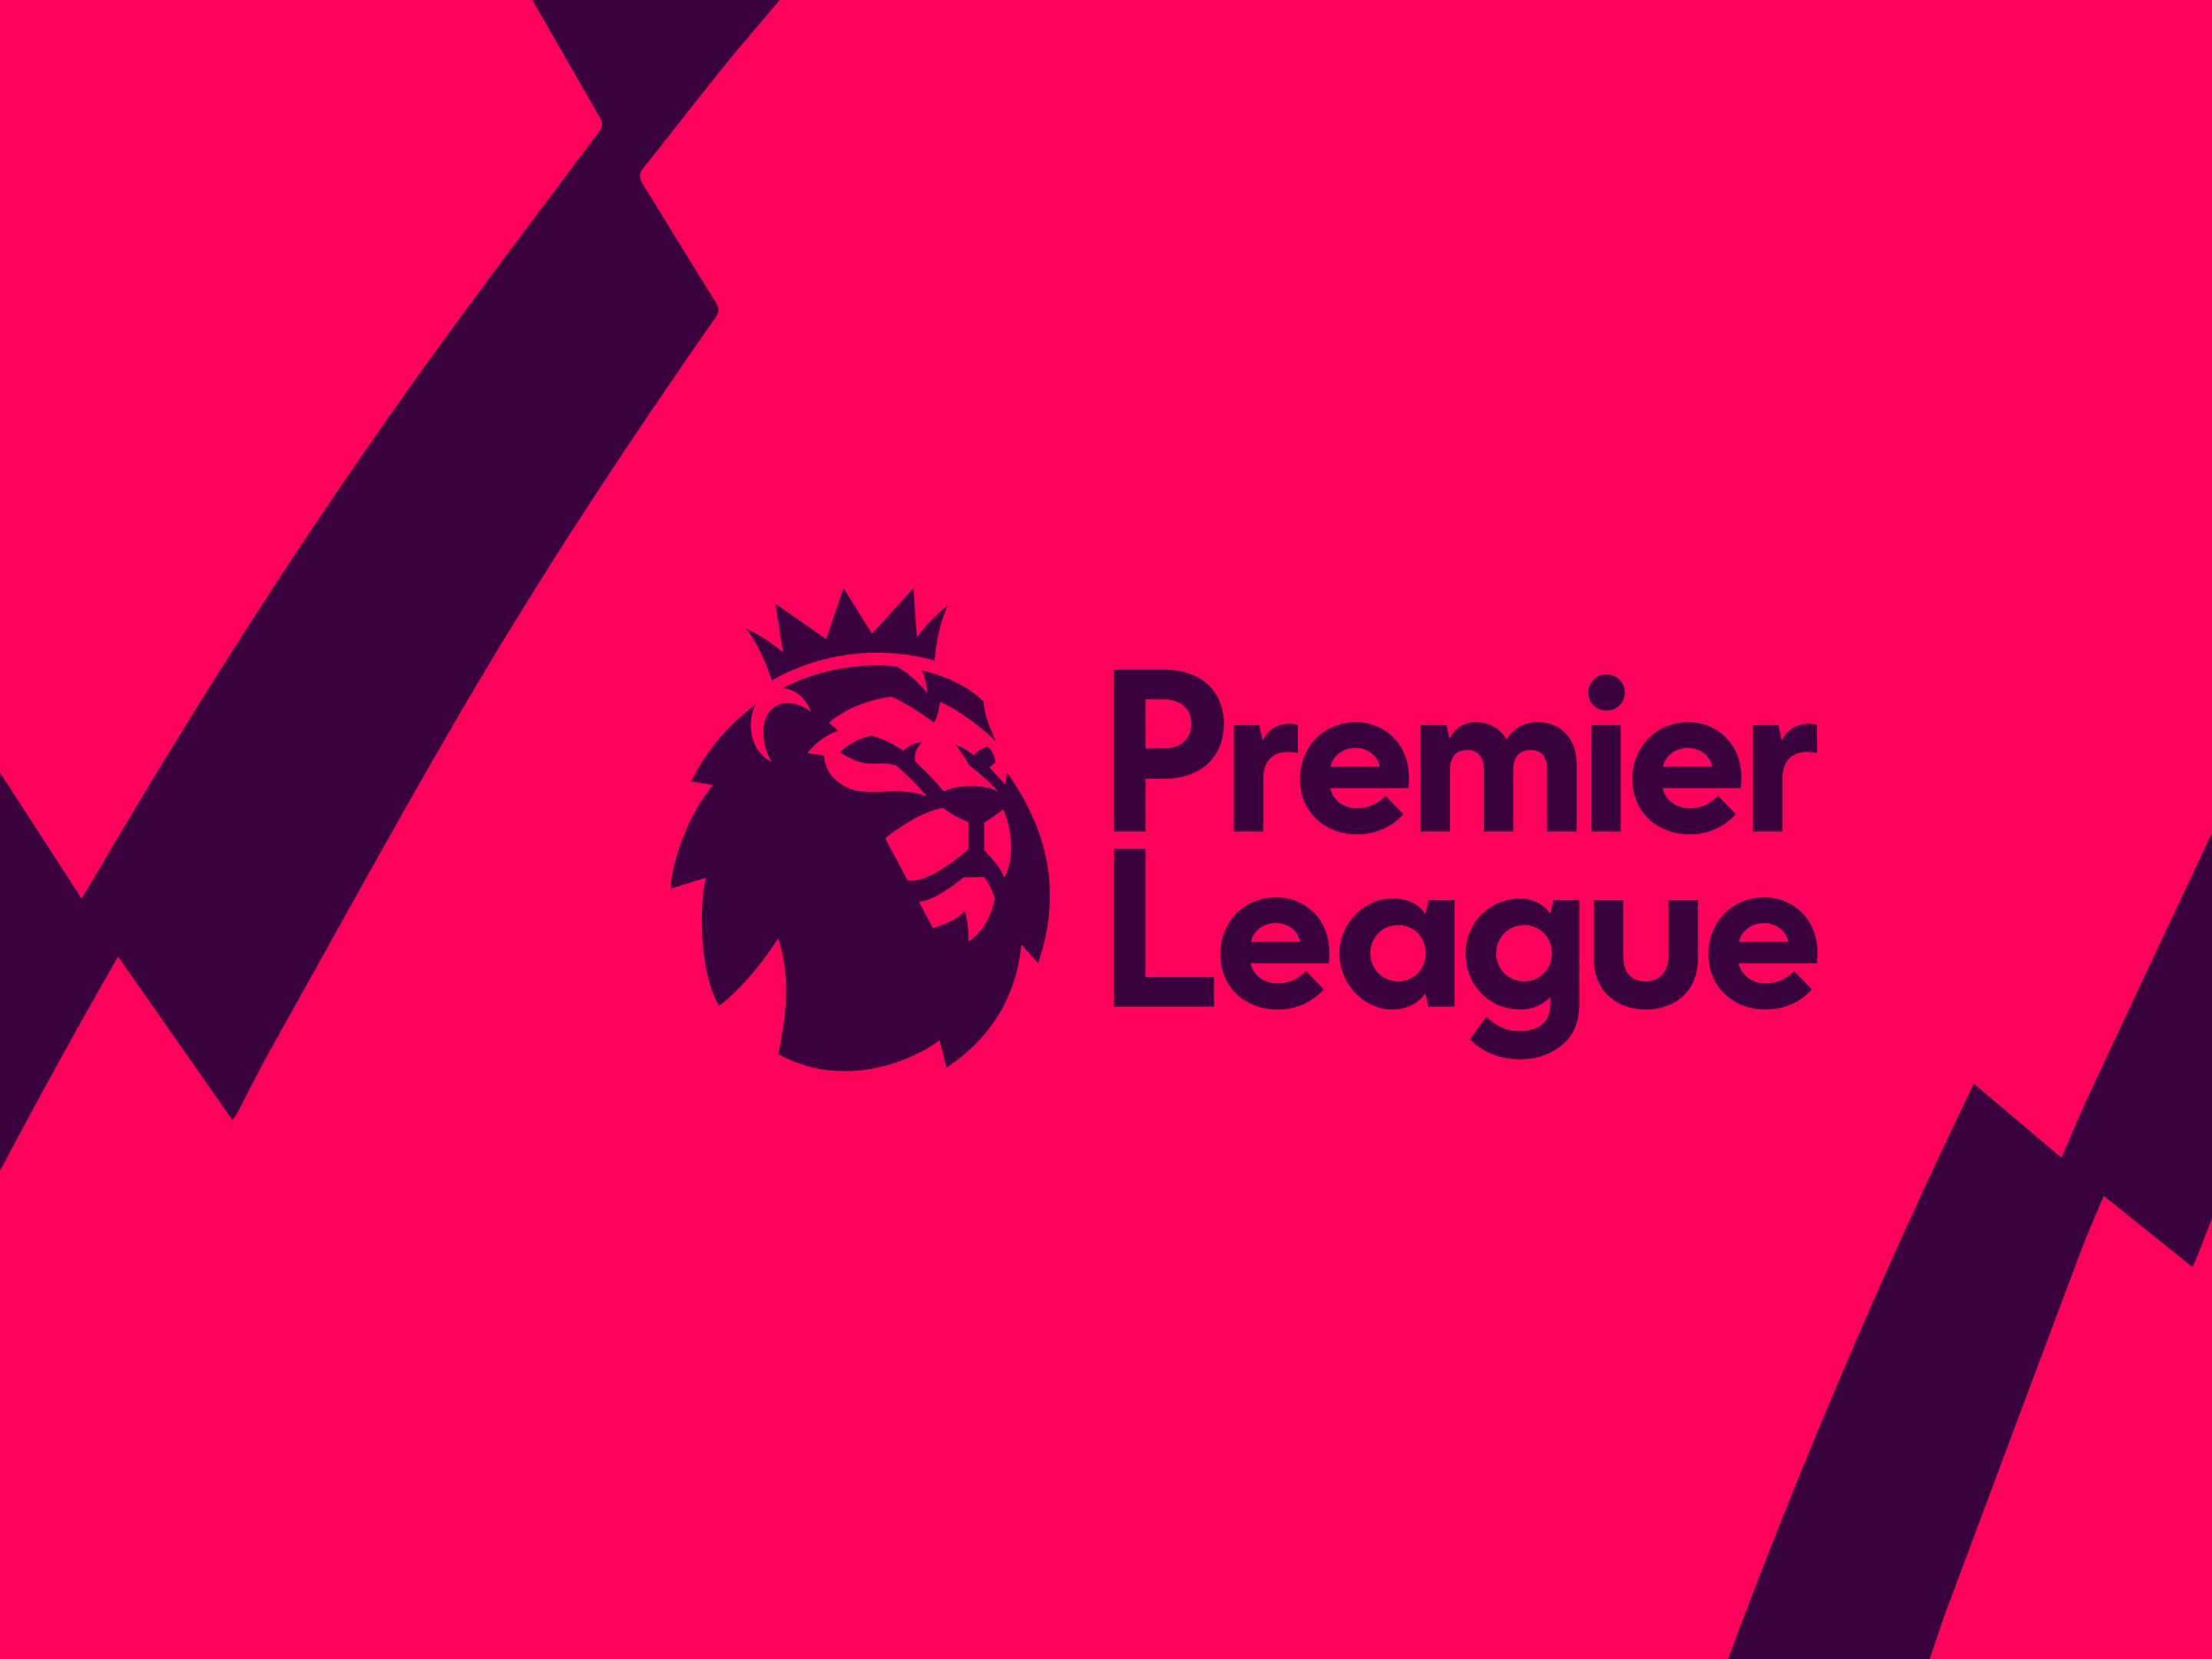 Premier League branding